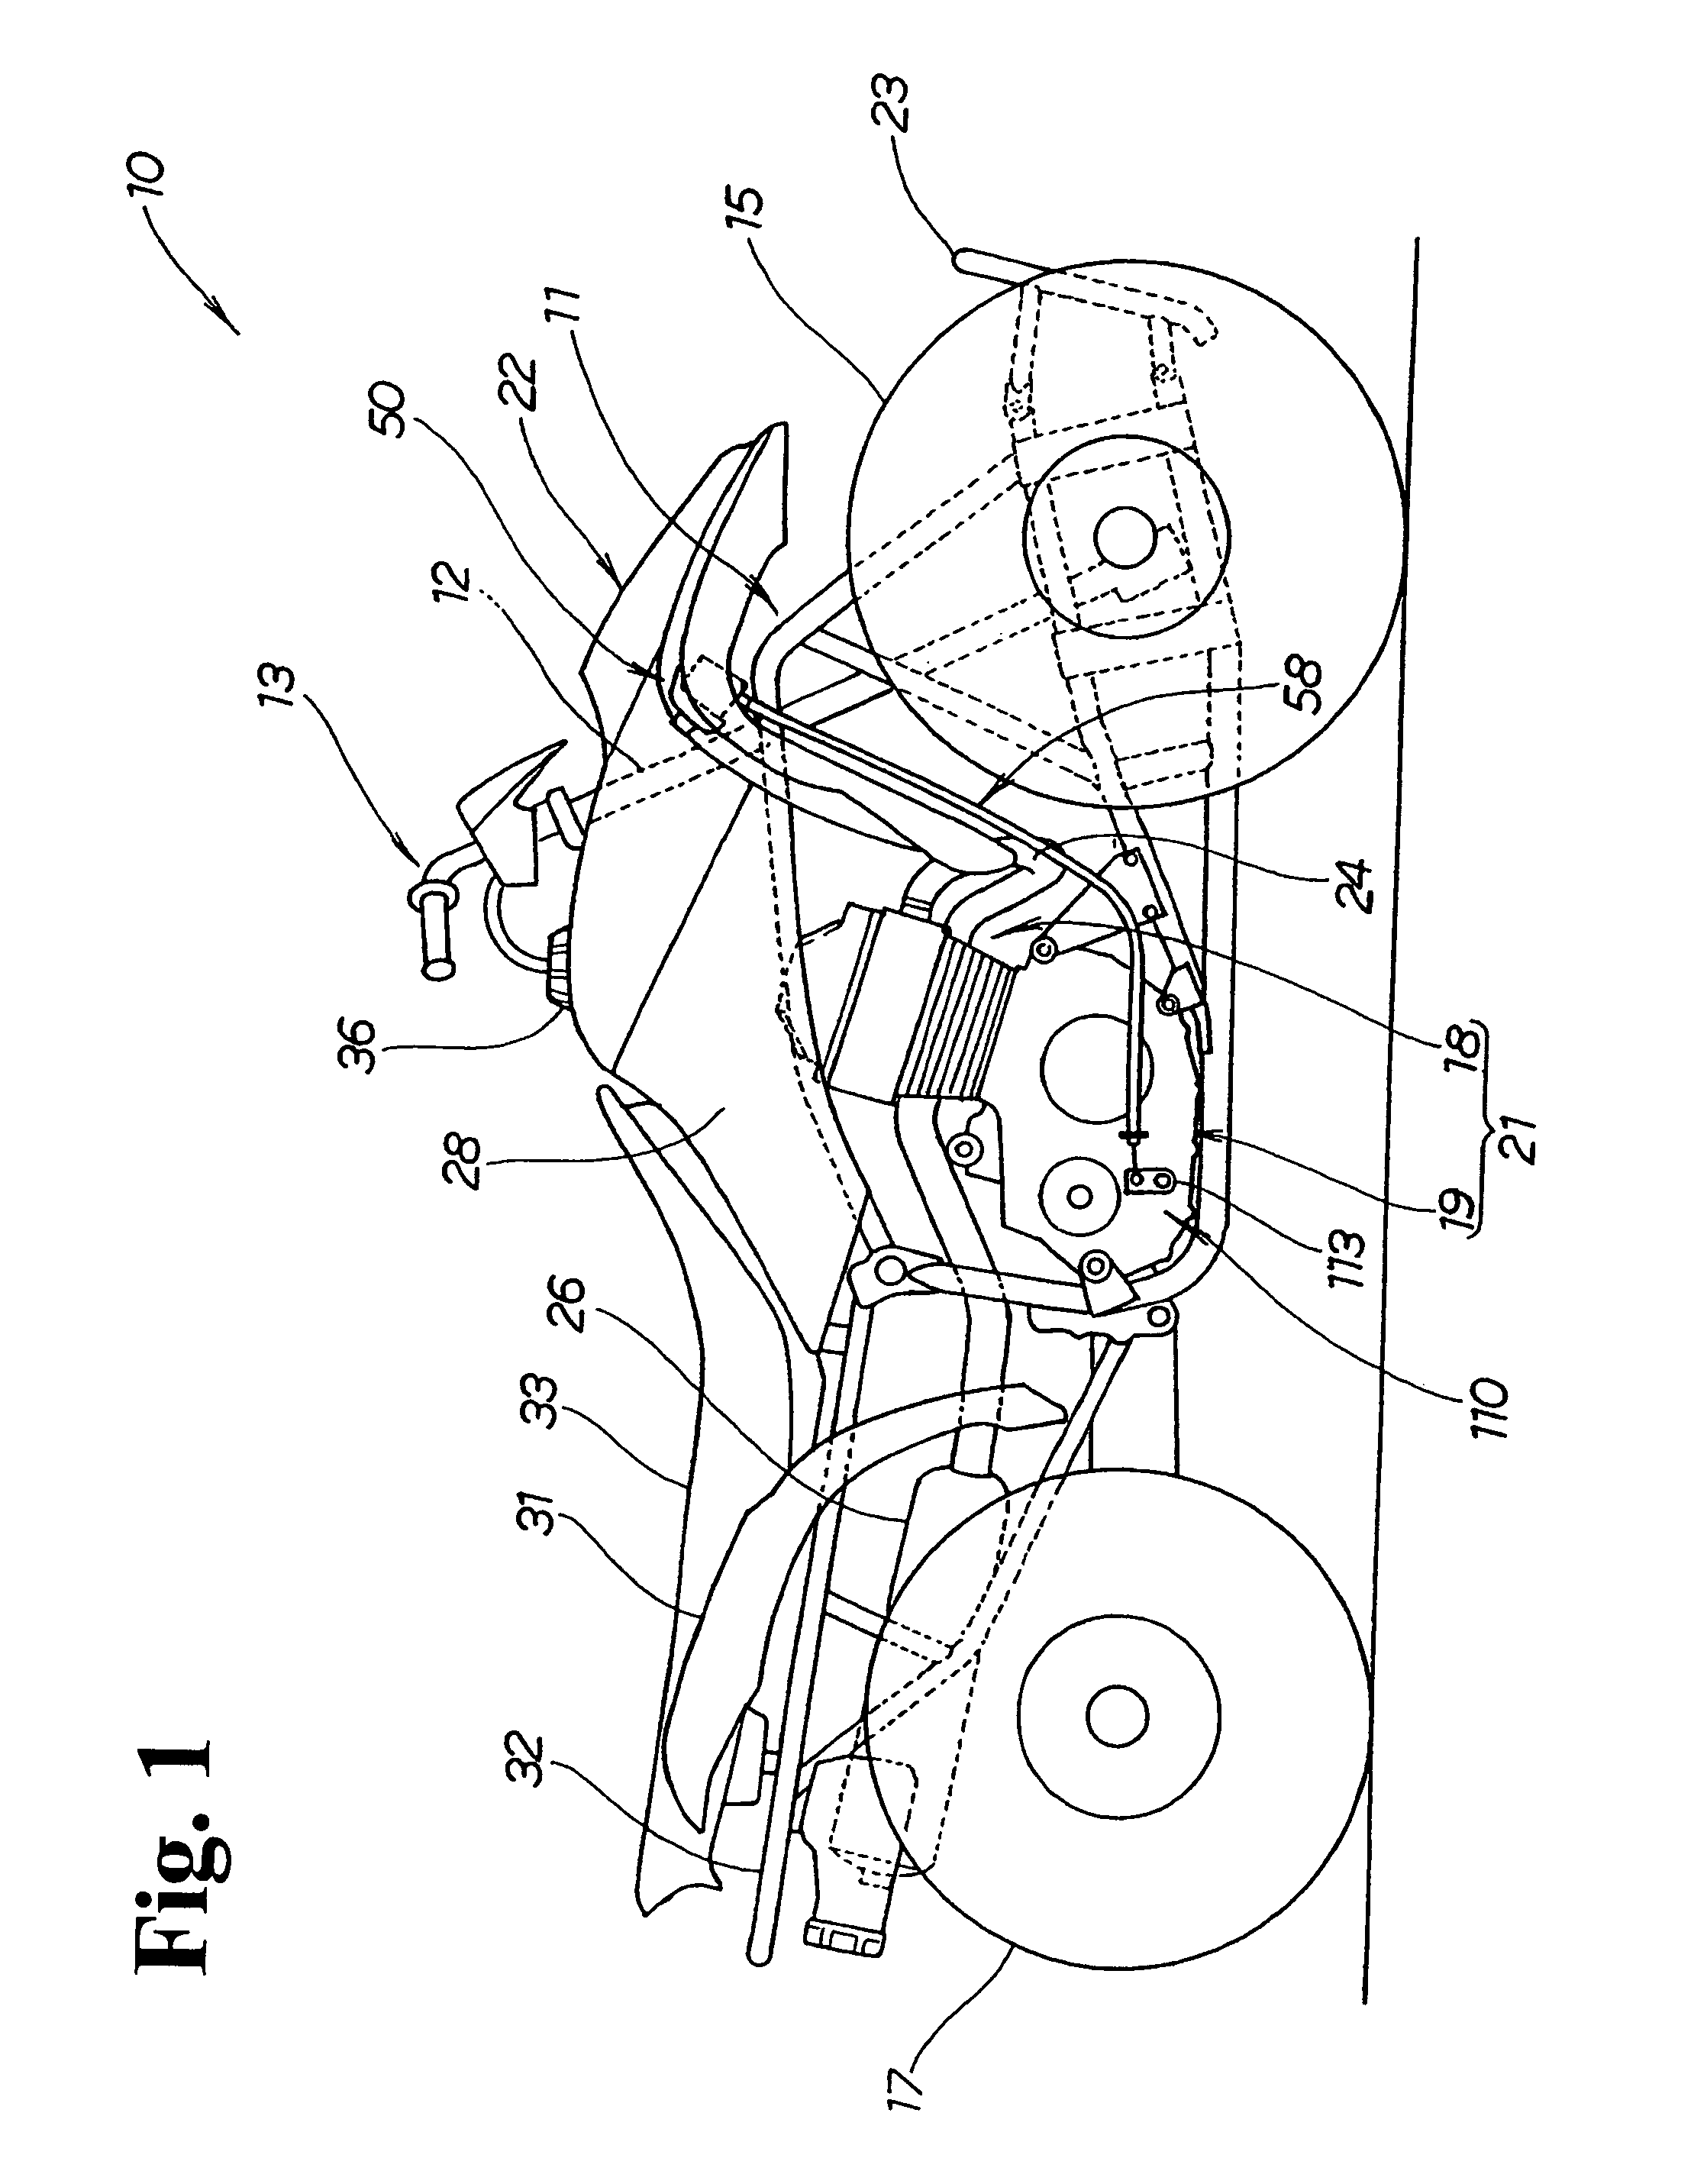 Locking assembly for motor vehicle of saddle riding type